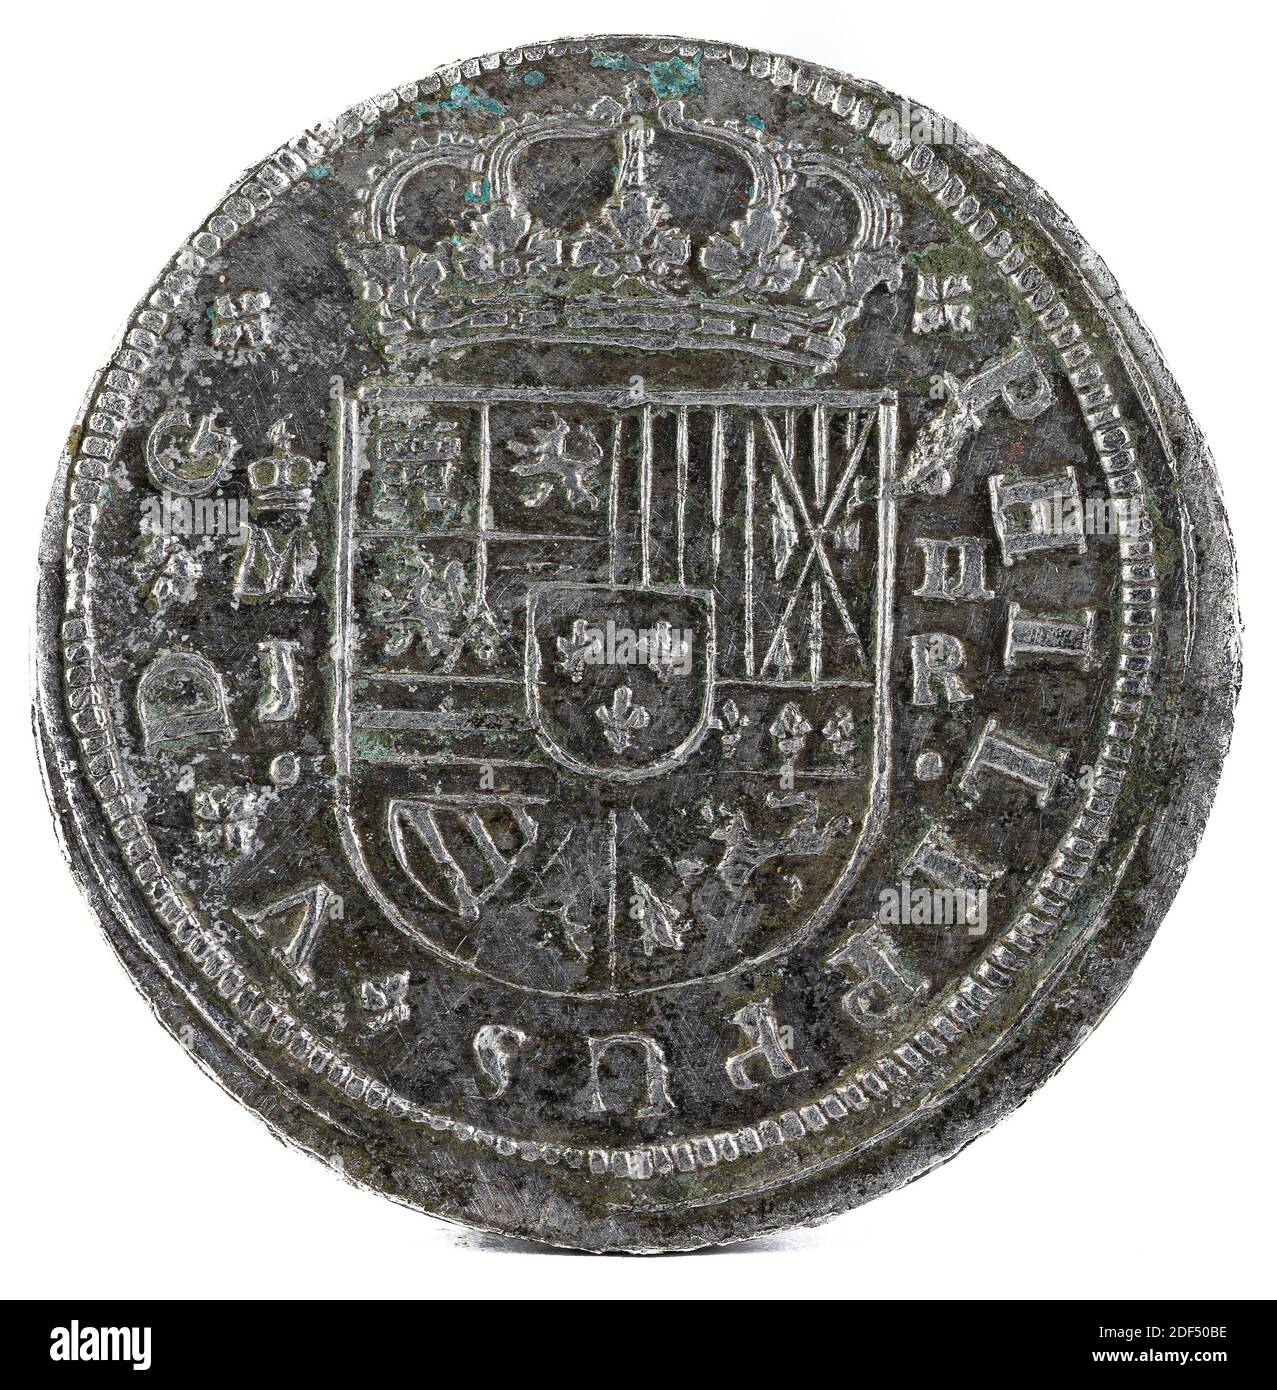 Eine alte spanische Silbermünze des Königs Felipe V. 1717. Geprägt in Madrid. 2 Reales. Vorderseite. Stockfoto